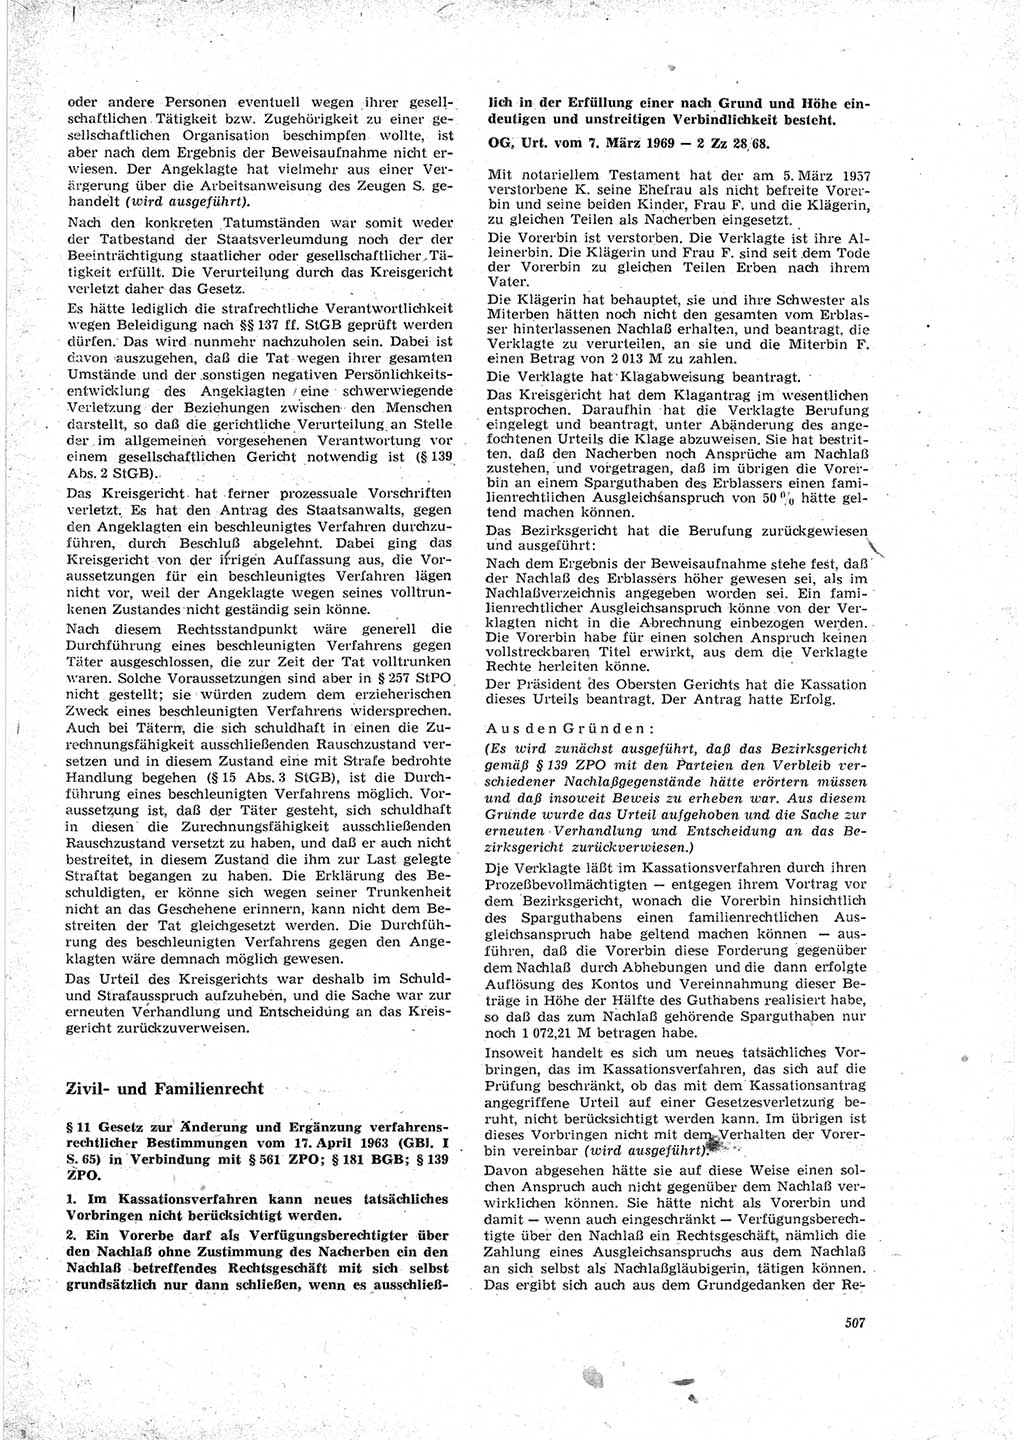 Neue Justiz (NJ), Zeitschrift für Recht und Rechtswissenschaft [Deutsche Demokratische Republik (DDR)], 23. Jahrgang 1969, Seite 507 (NJ DDR 1969, S. 507)